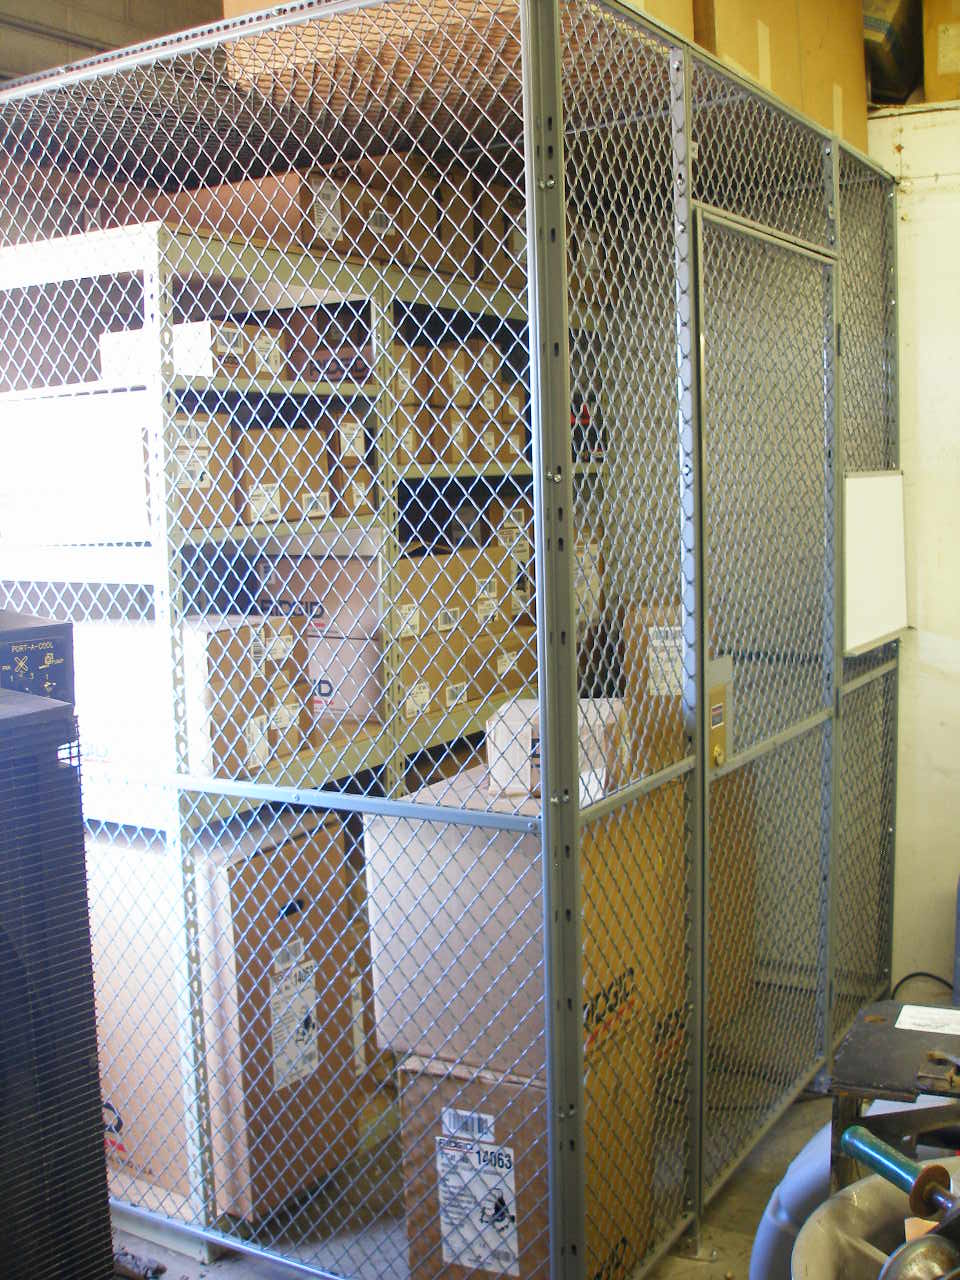 WWP - Maintenance Storage Crib.jpg